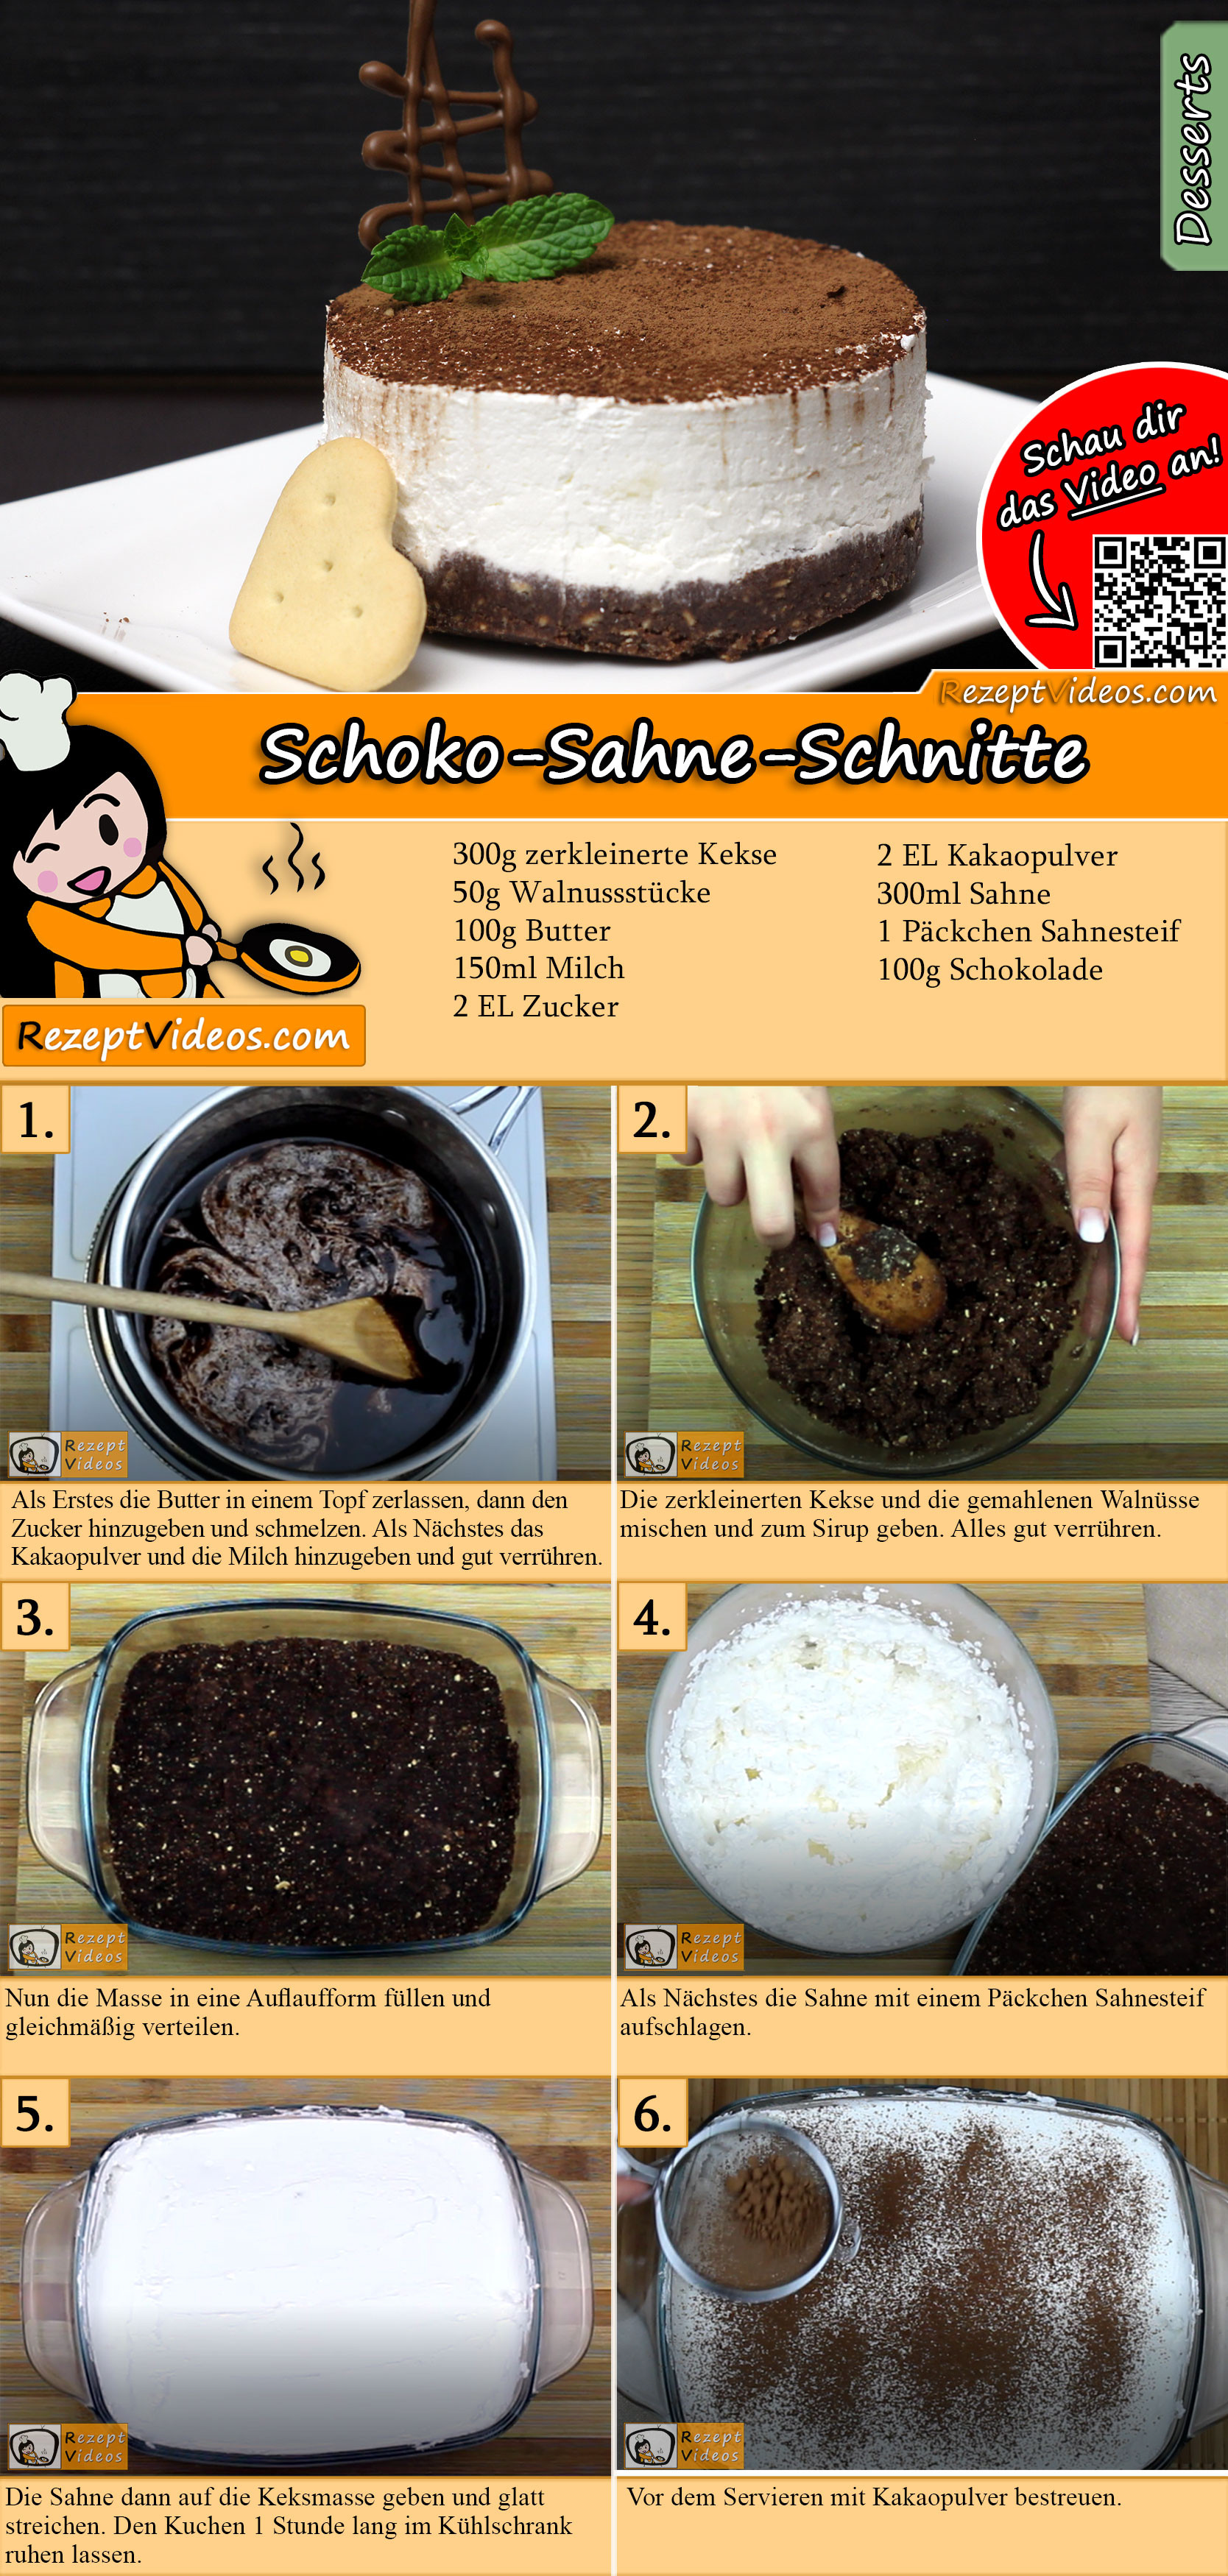 Schoko-Sahne-Schnitte Rezept mit Video